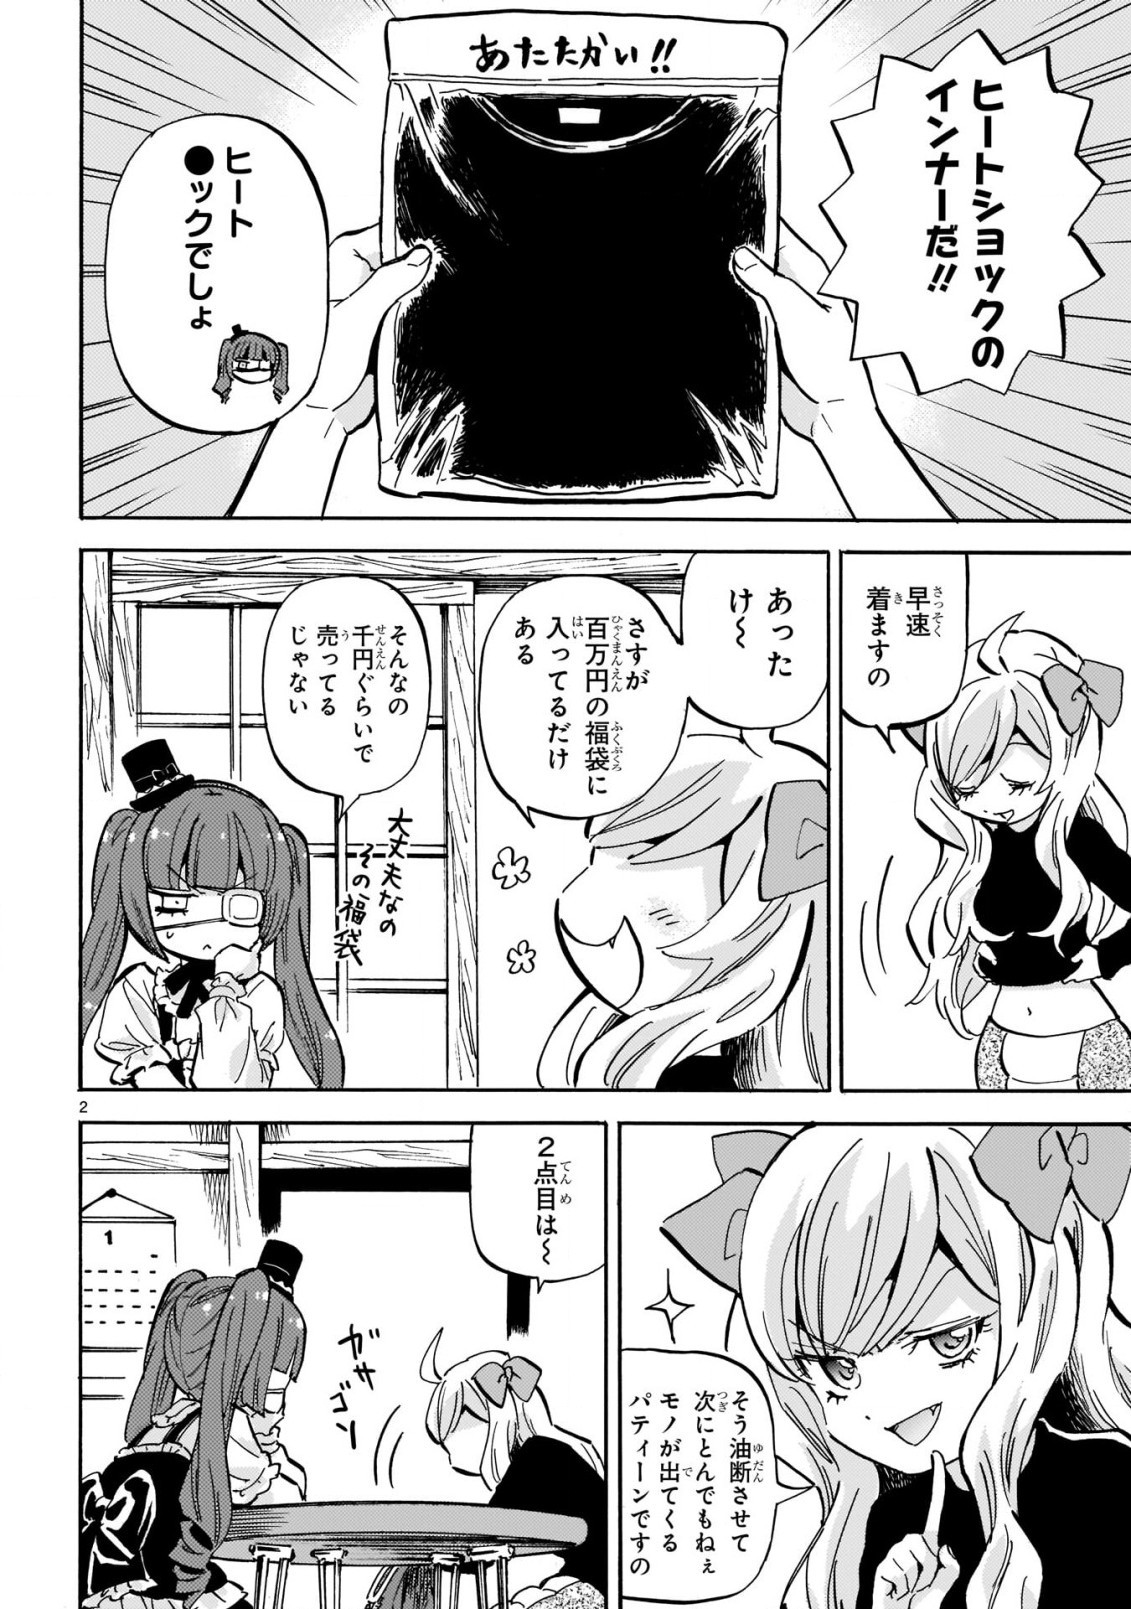 Jashin-chan Dropkick - Chapter 206 - Page 2